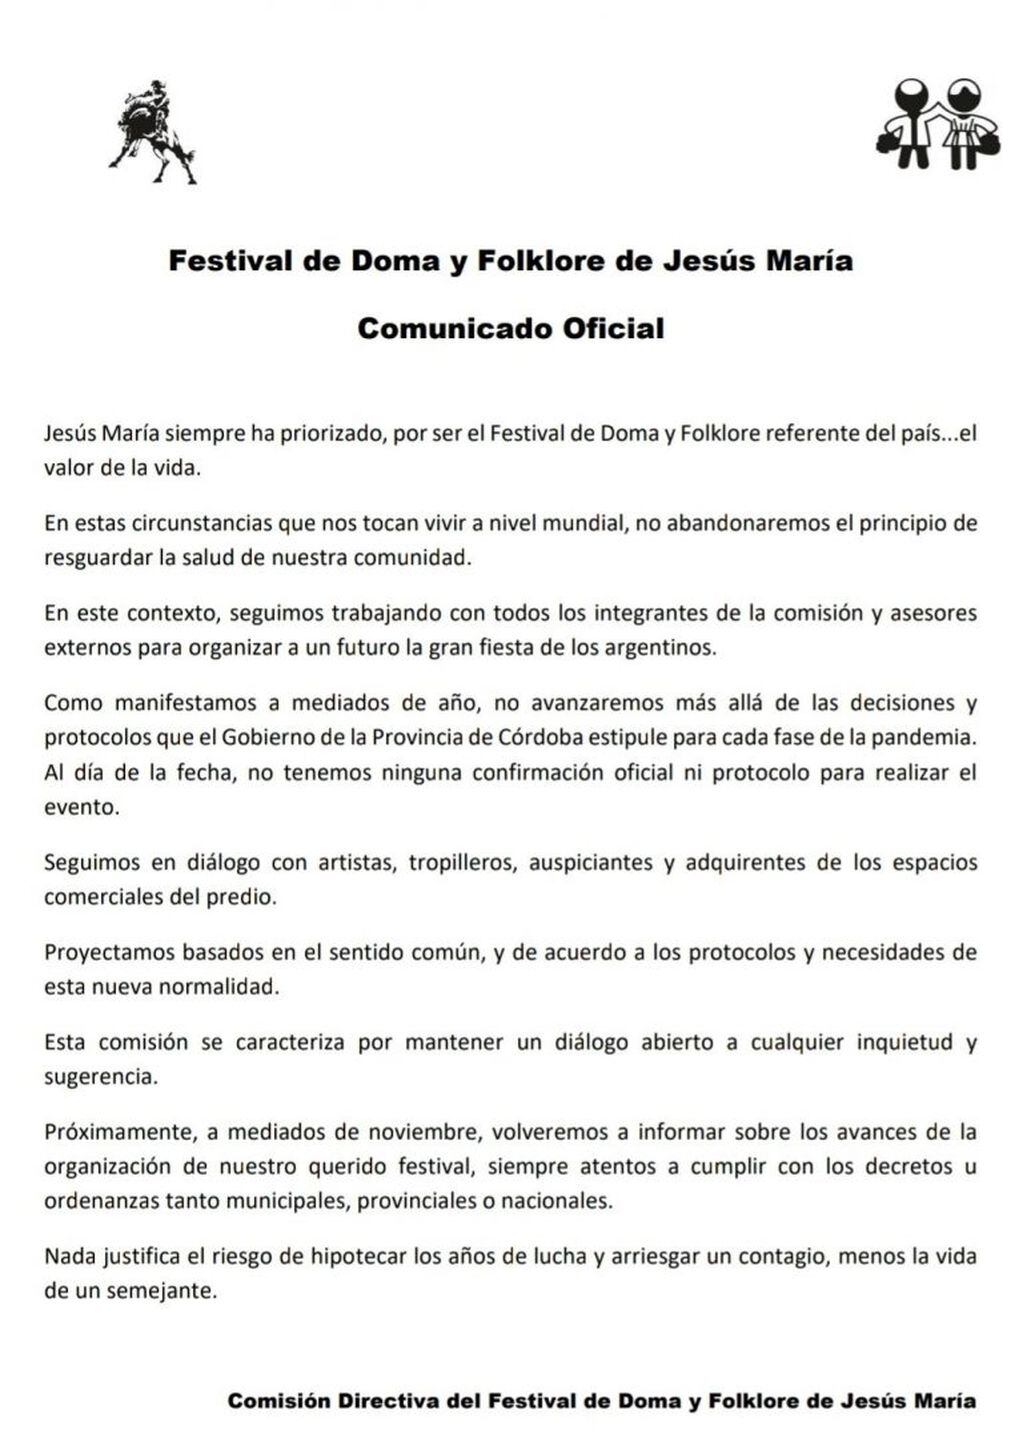 Comunicado oficial del Festival de Doma y Folclore de Jesús María